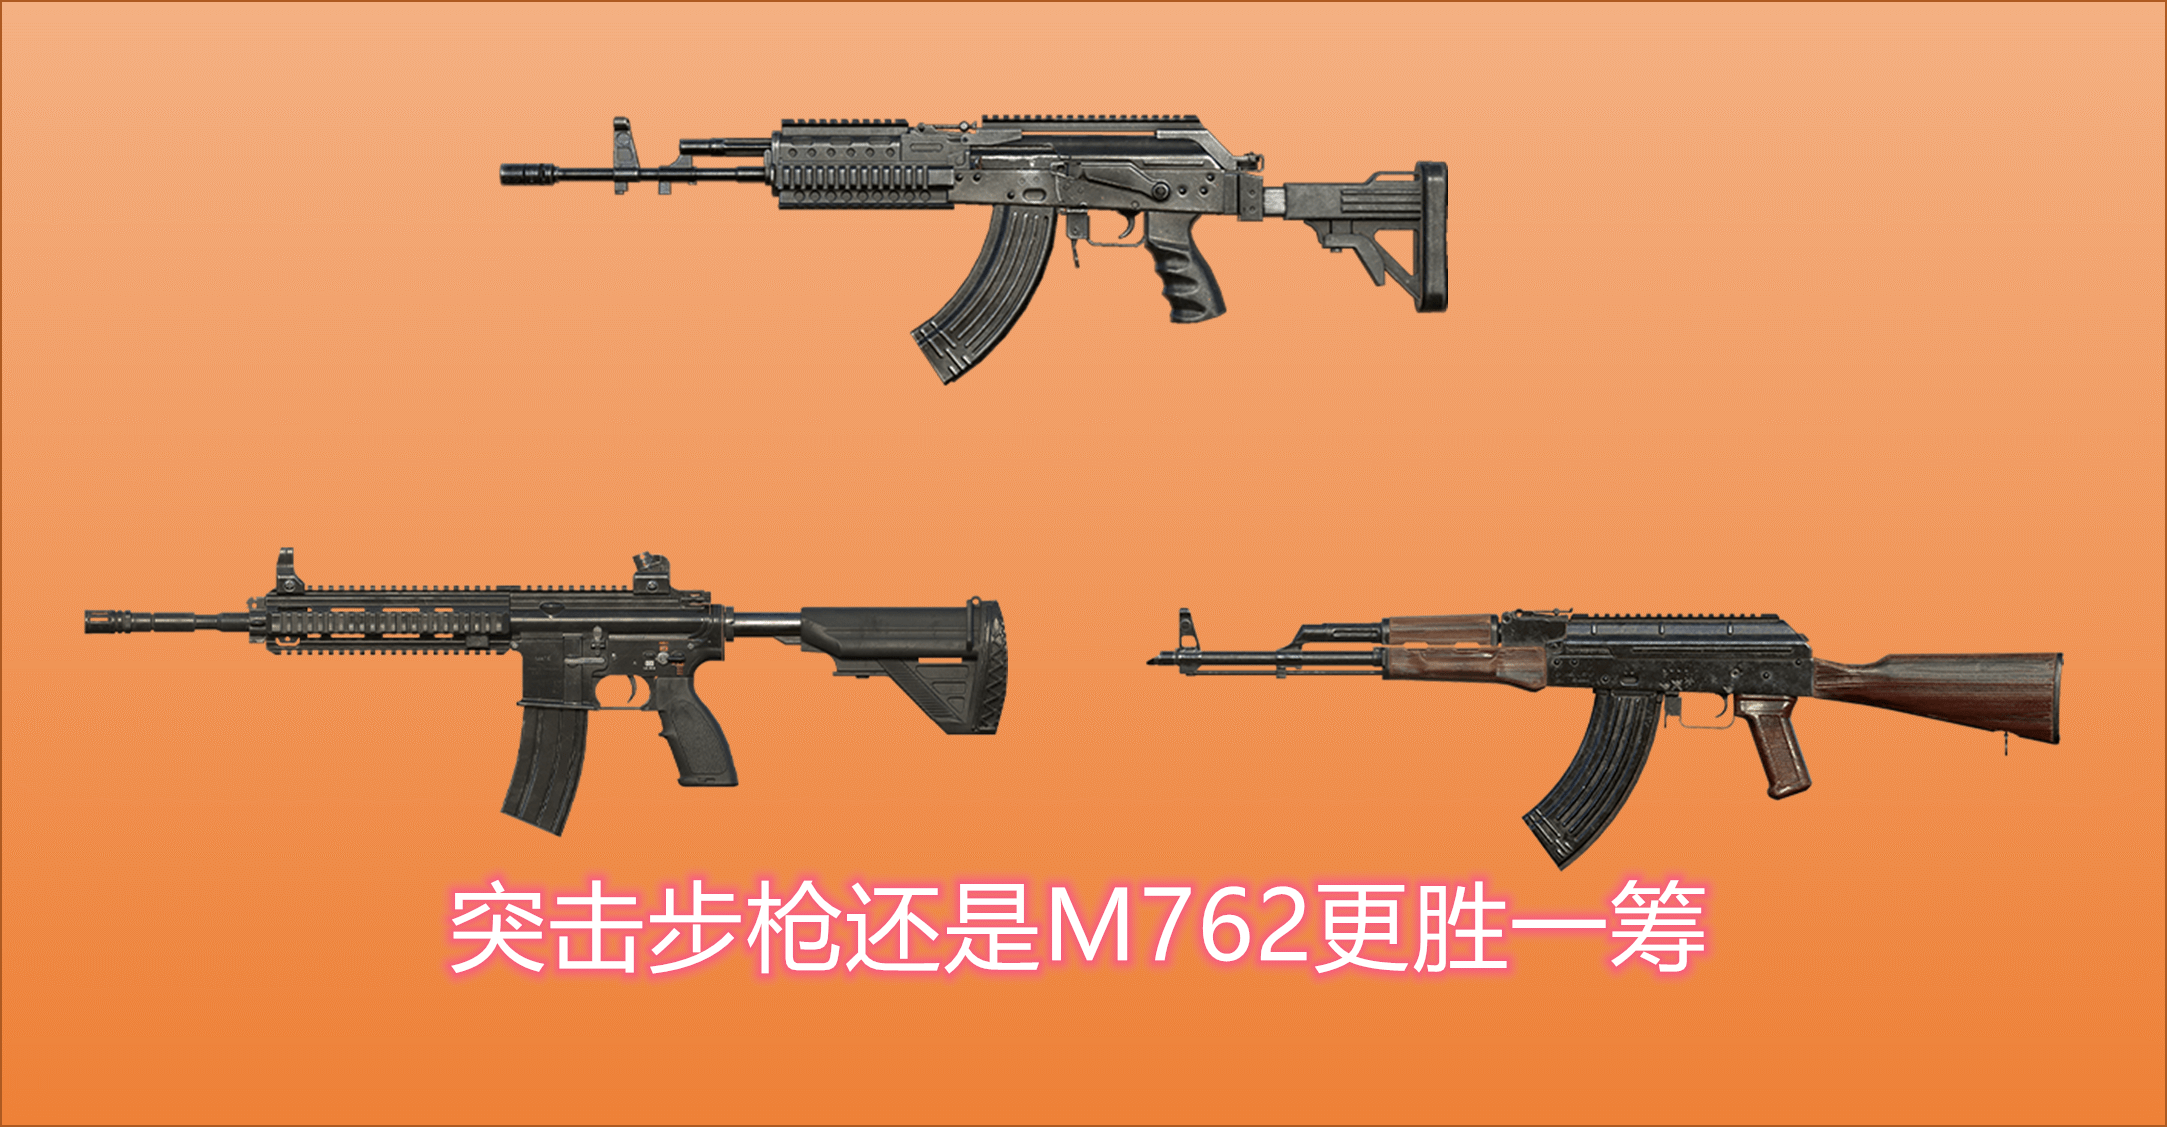 原创和平精英:各系列装备的首推武器,m762凌驾m614,uzi凭dps上位